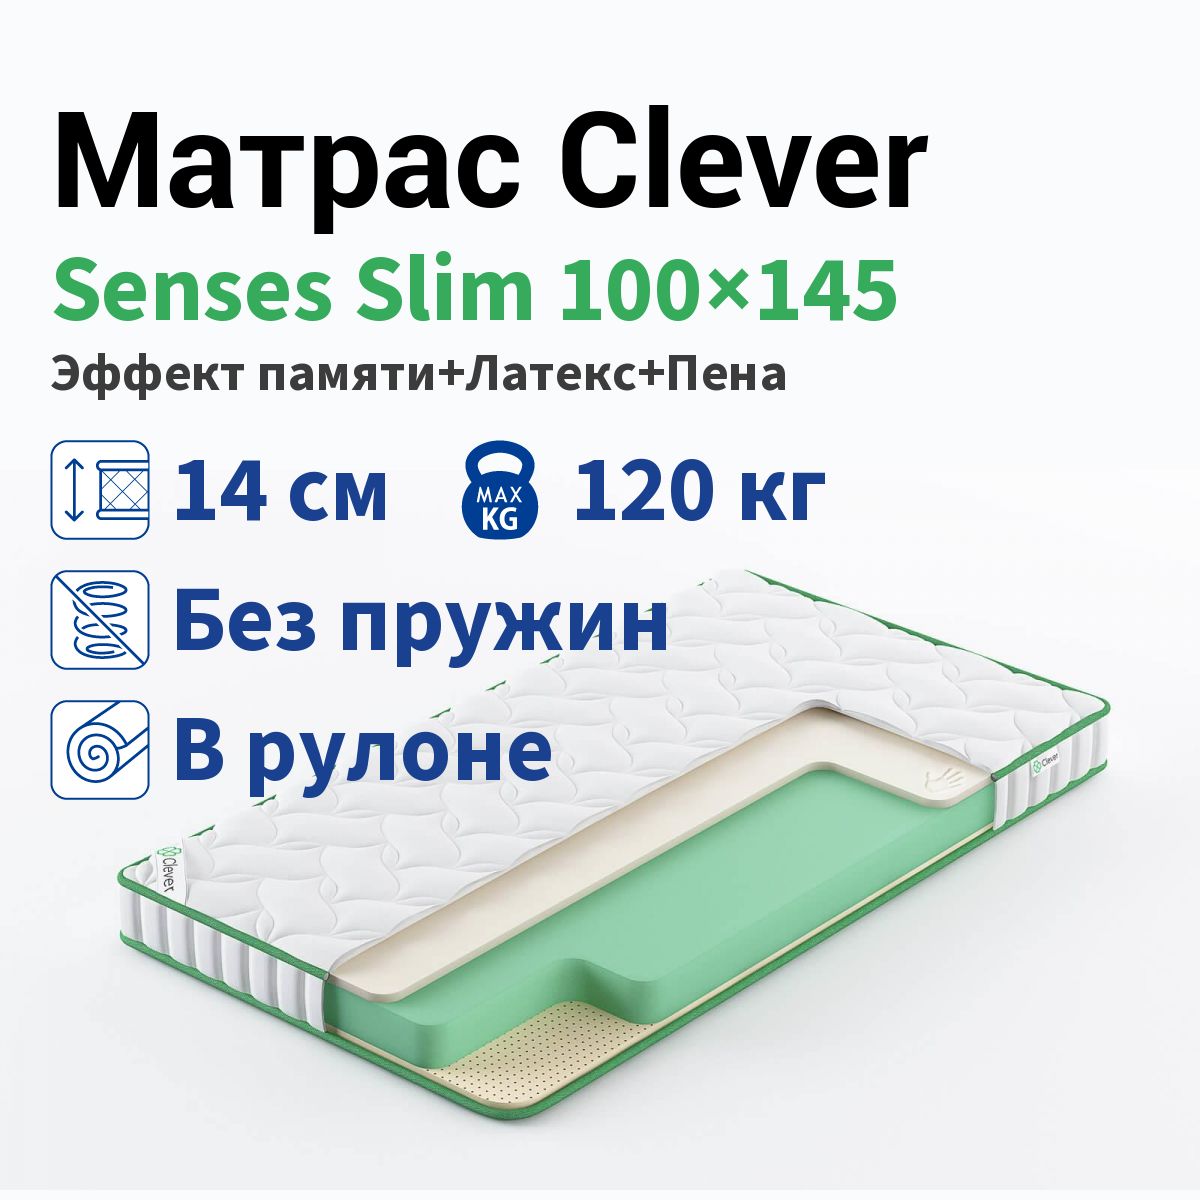 Матрас Clever Senses Slim 100x145